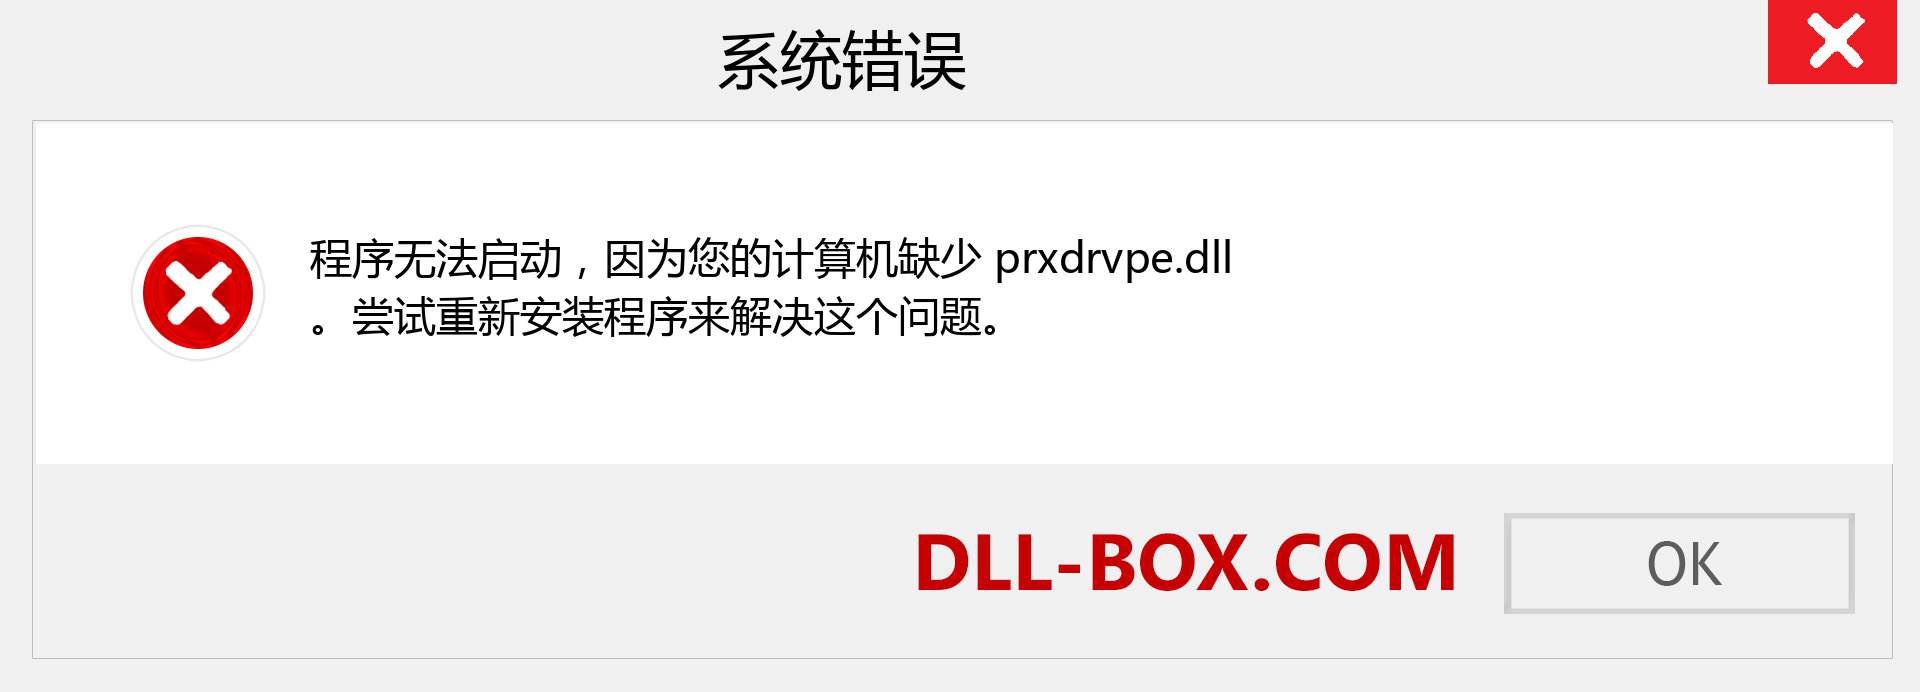 prxdrvpe.dll 文件丢失？。 适用于 Windows 7、8、10 的下载 - 修复 Windows、照片、图像上的 prxdrvpe dll 丢失错误